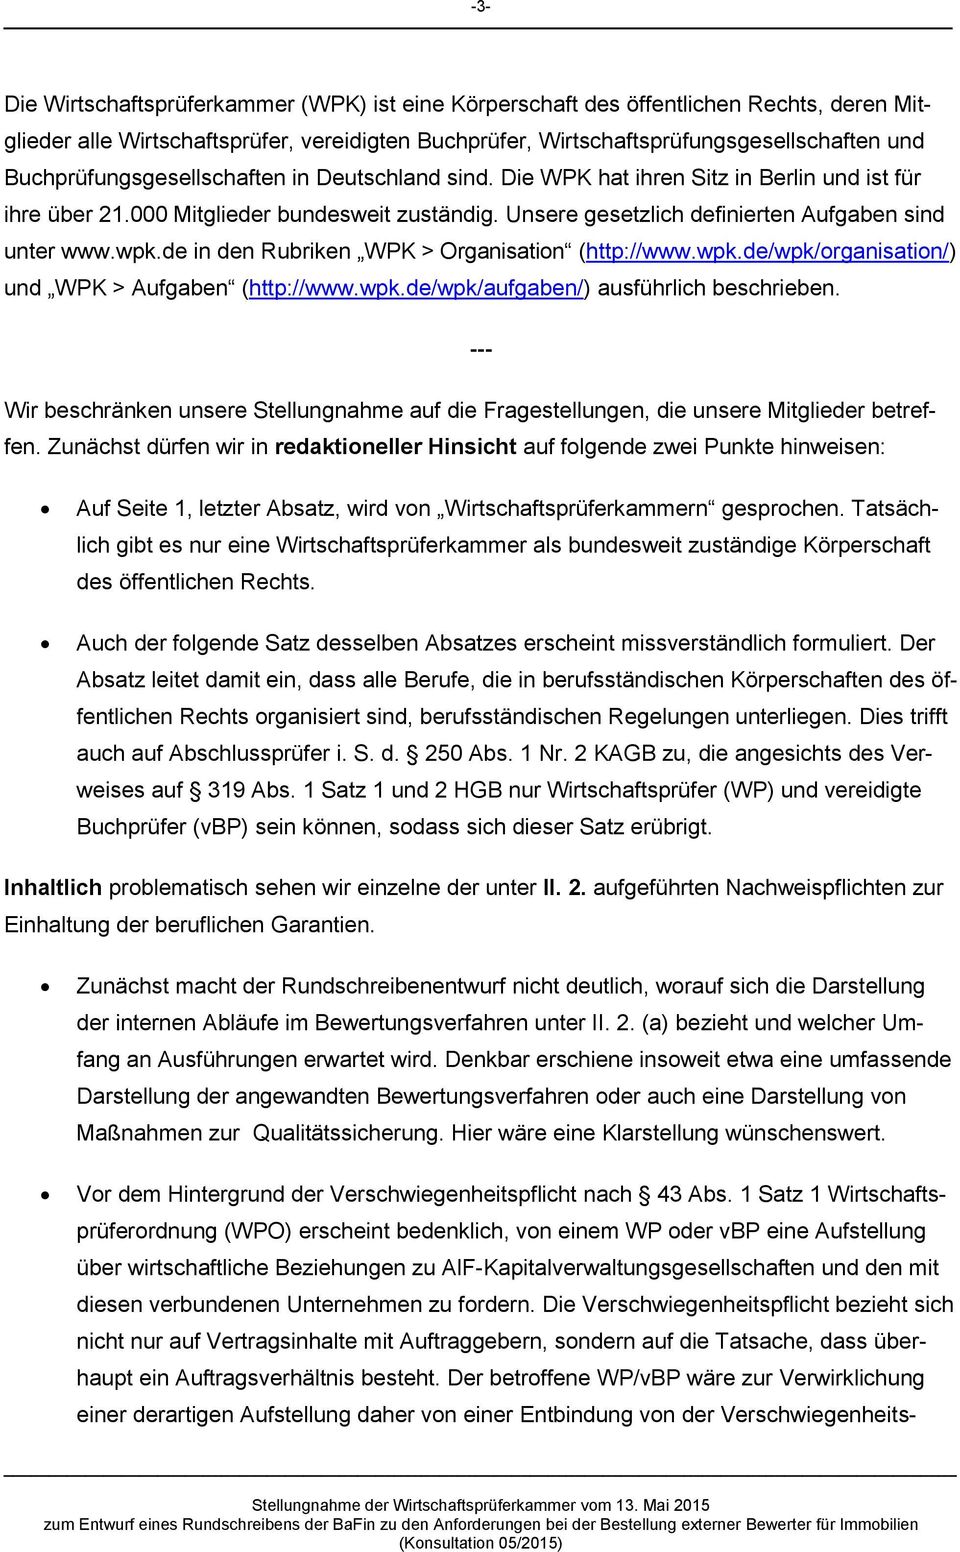 wpk.de in den Rubriken WPK > Organisation (http://www.wpk.de/wpk/organisation/) und WPK > Aufgaben (http://www.wpk.de/wpk/aufgaben/) ausführlich beschrieben.